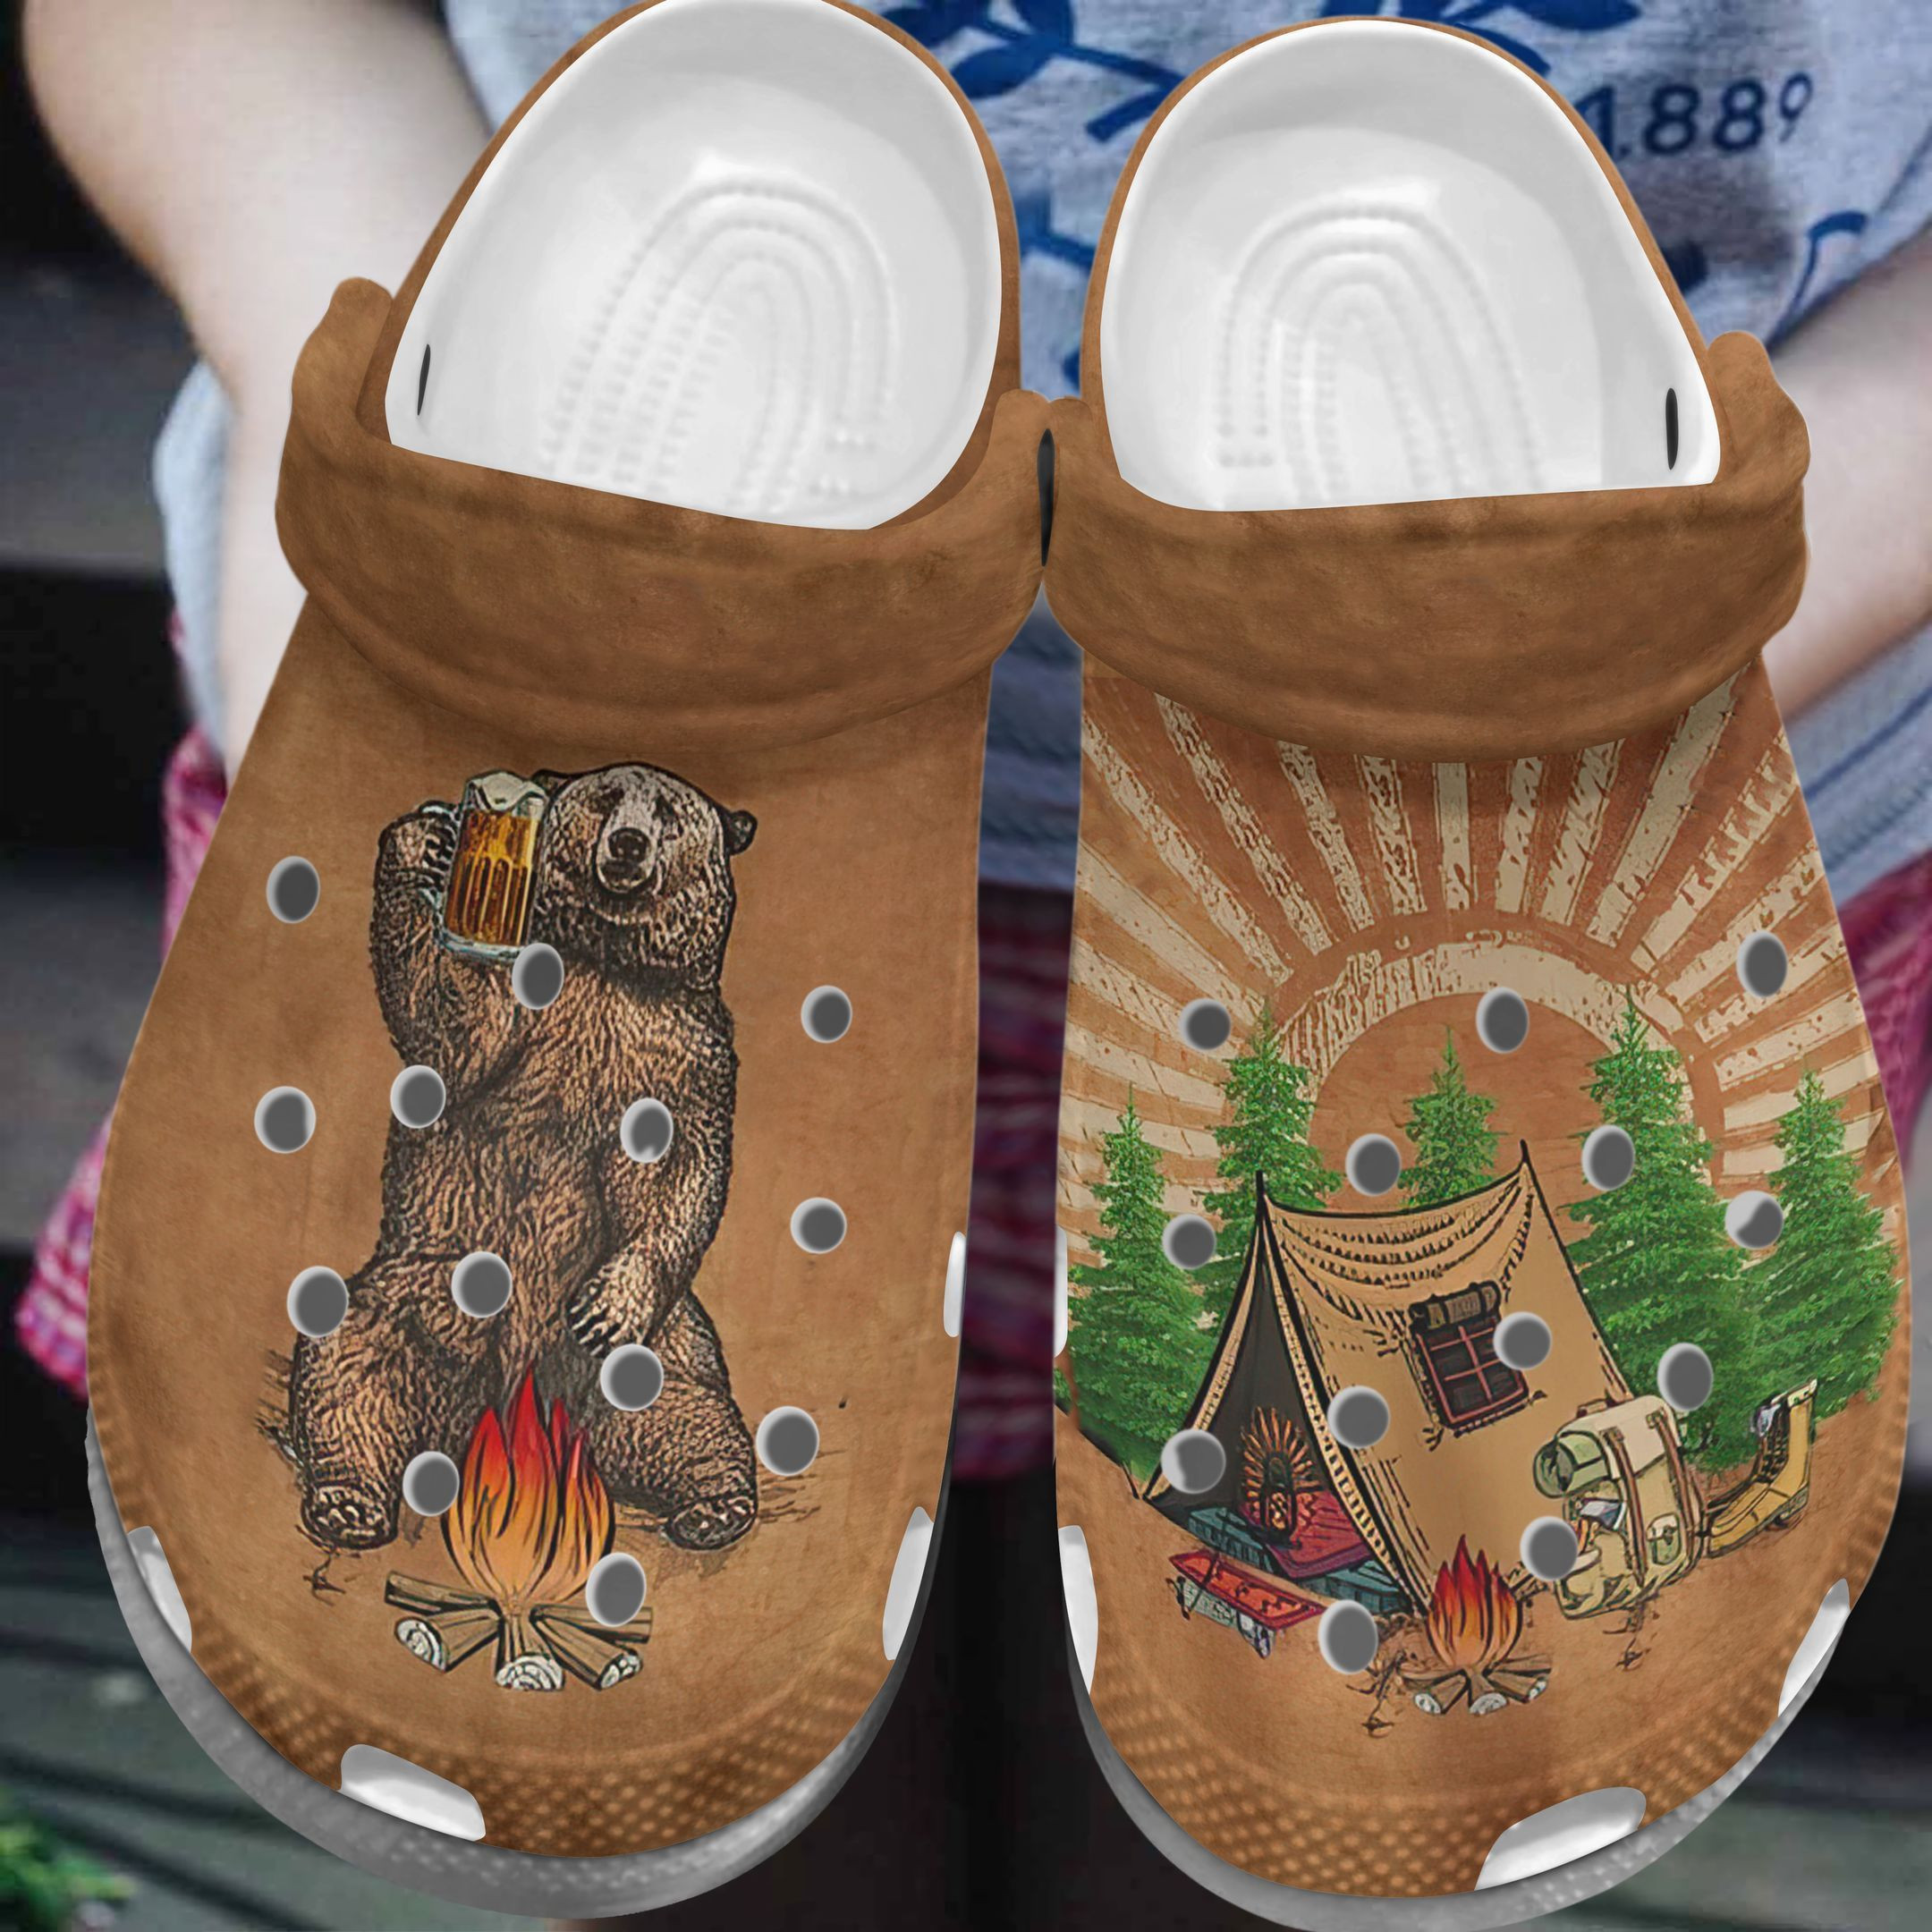 Bear Beer Camping Crocs Shoes Peace Camping Clog Crocbland Clog